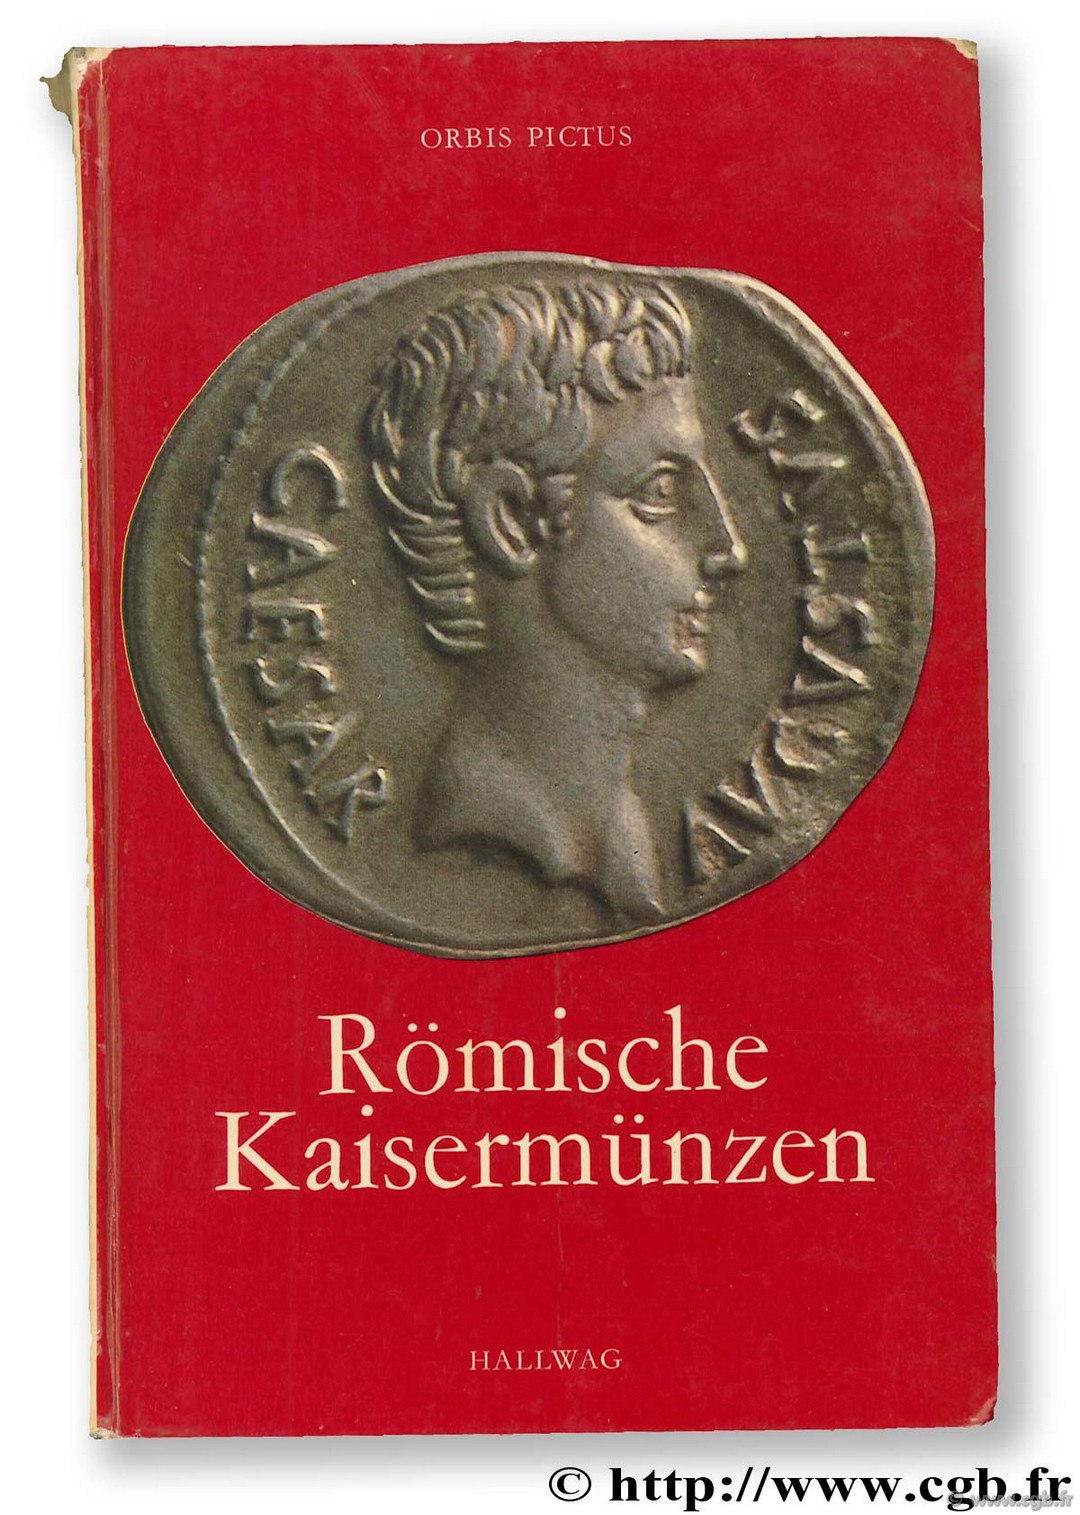 Römische Münzen WENGER O.-P.